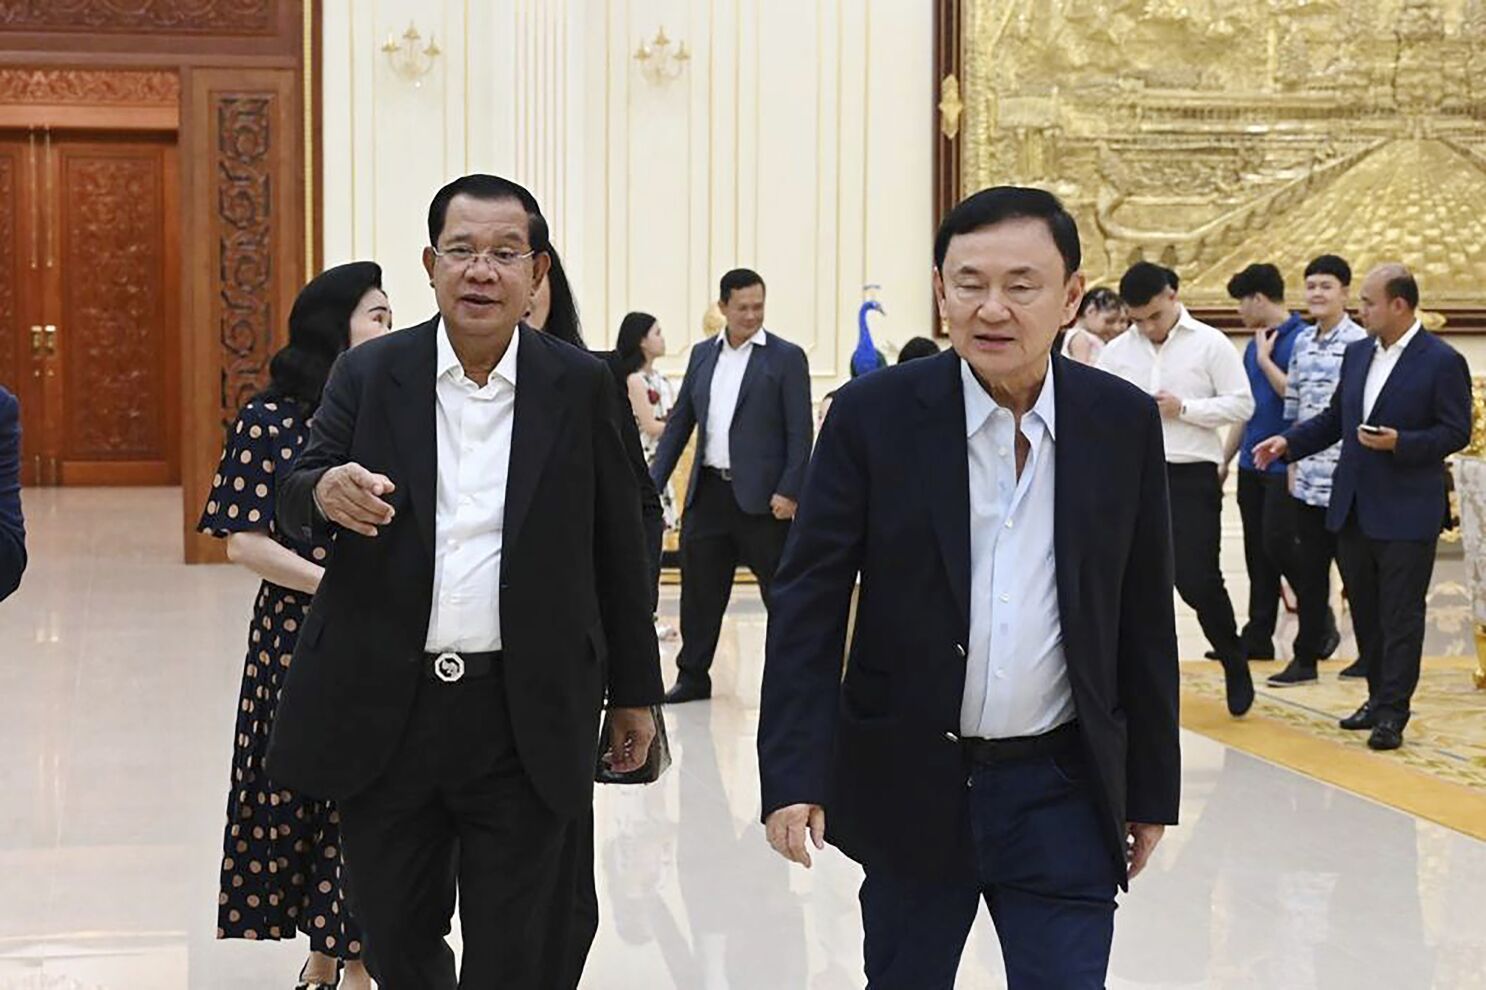 Loạt ảnh cựu Thủ tướng Thái Lan Thaksin Shinawatra tới Campuchia - Ảnh 1.